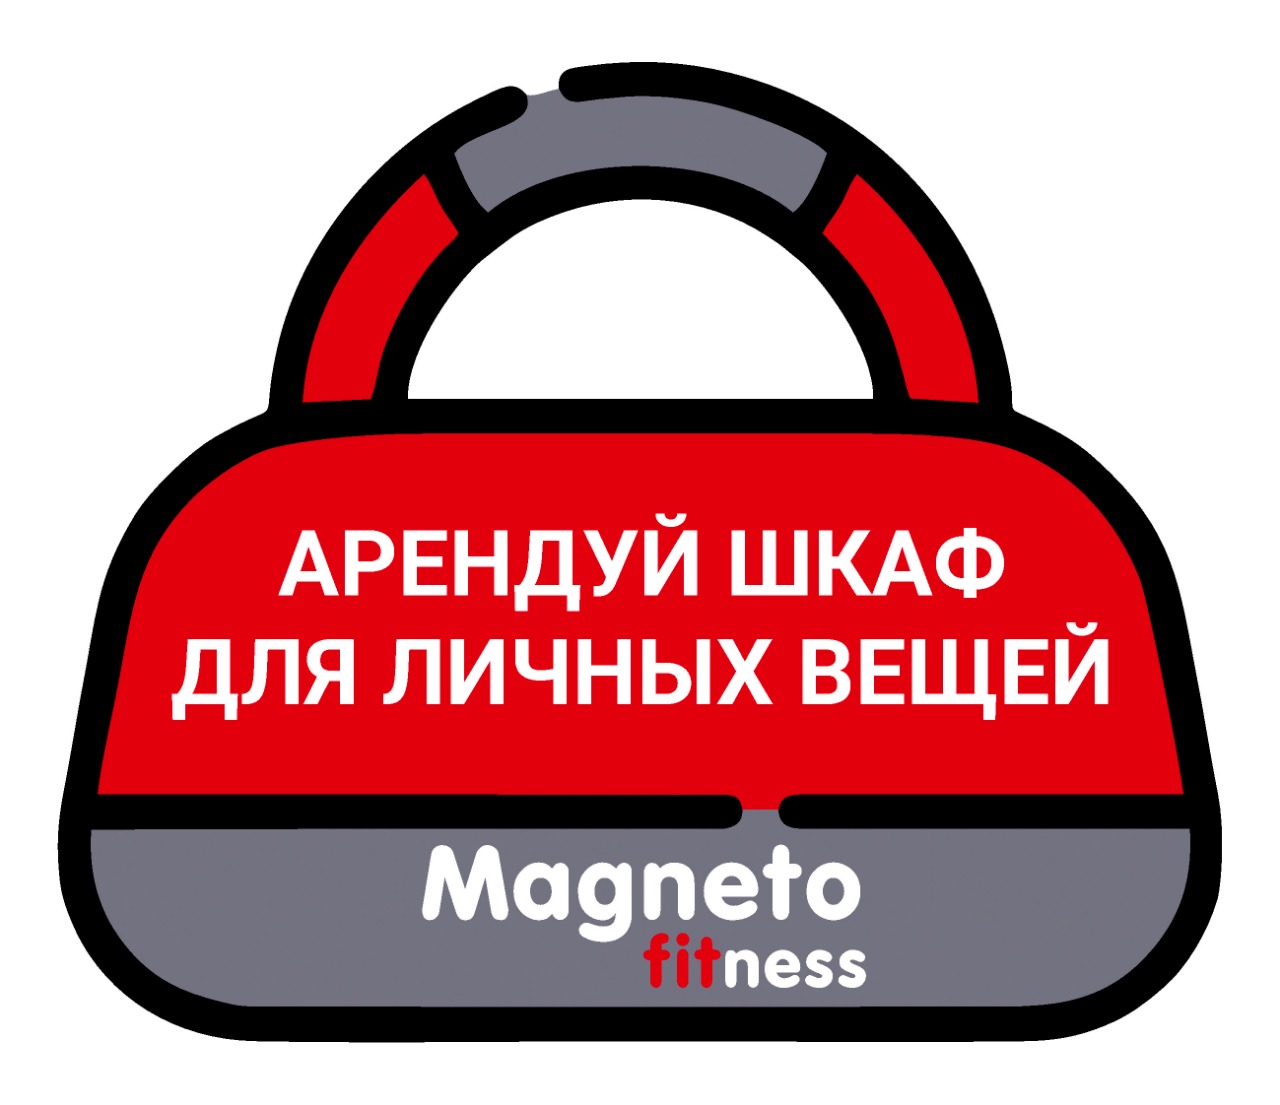 Арендуй шкафчик для личных вещей - Magneto Fitness Марьино